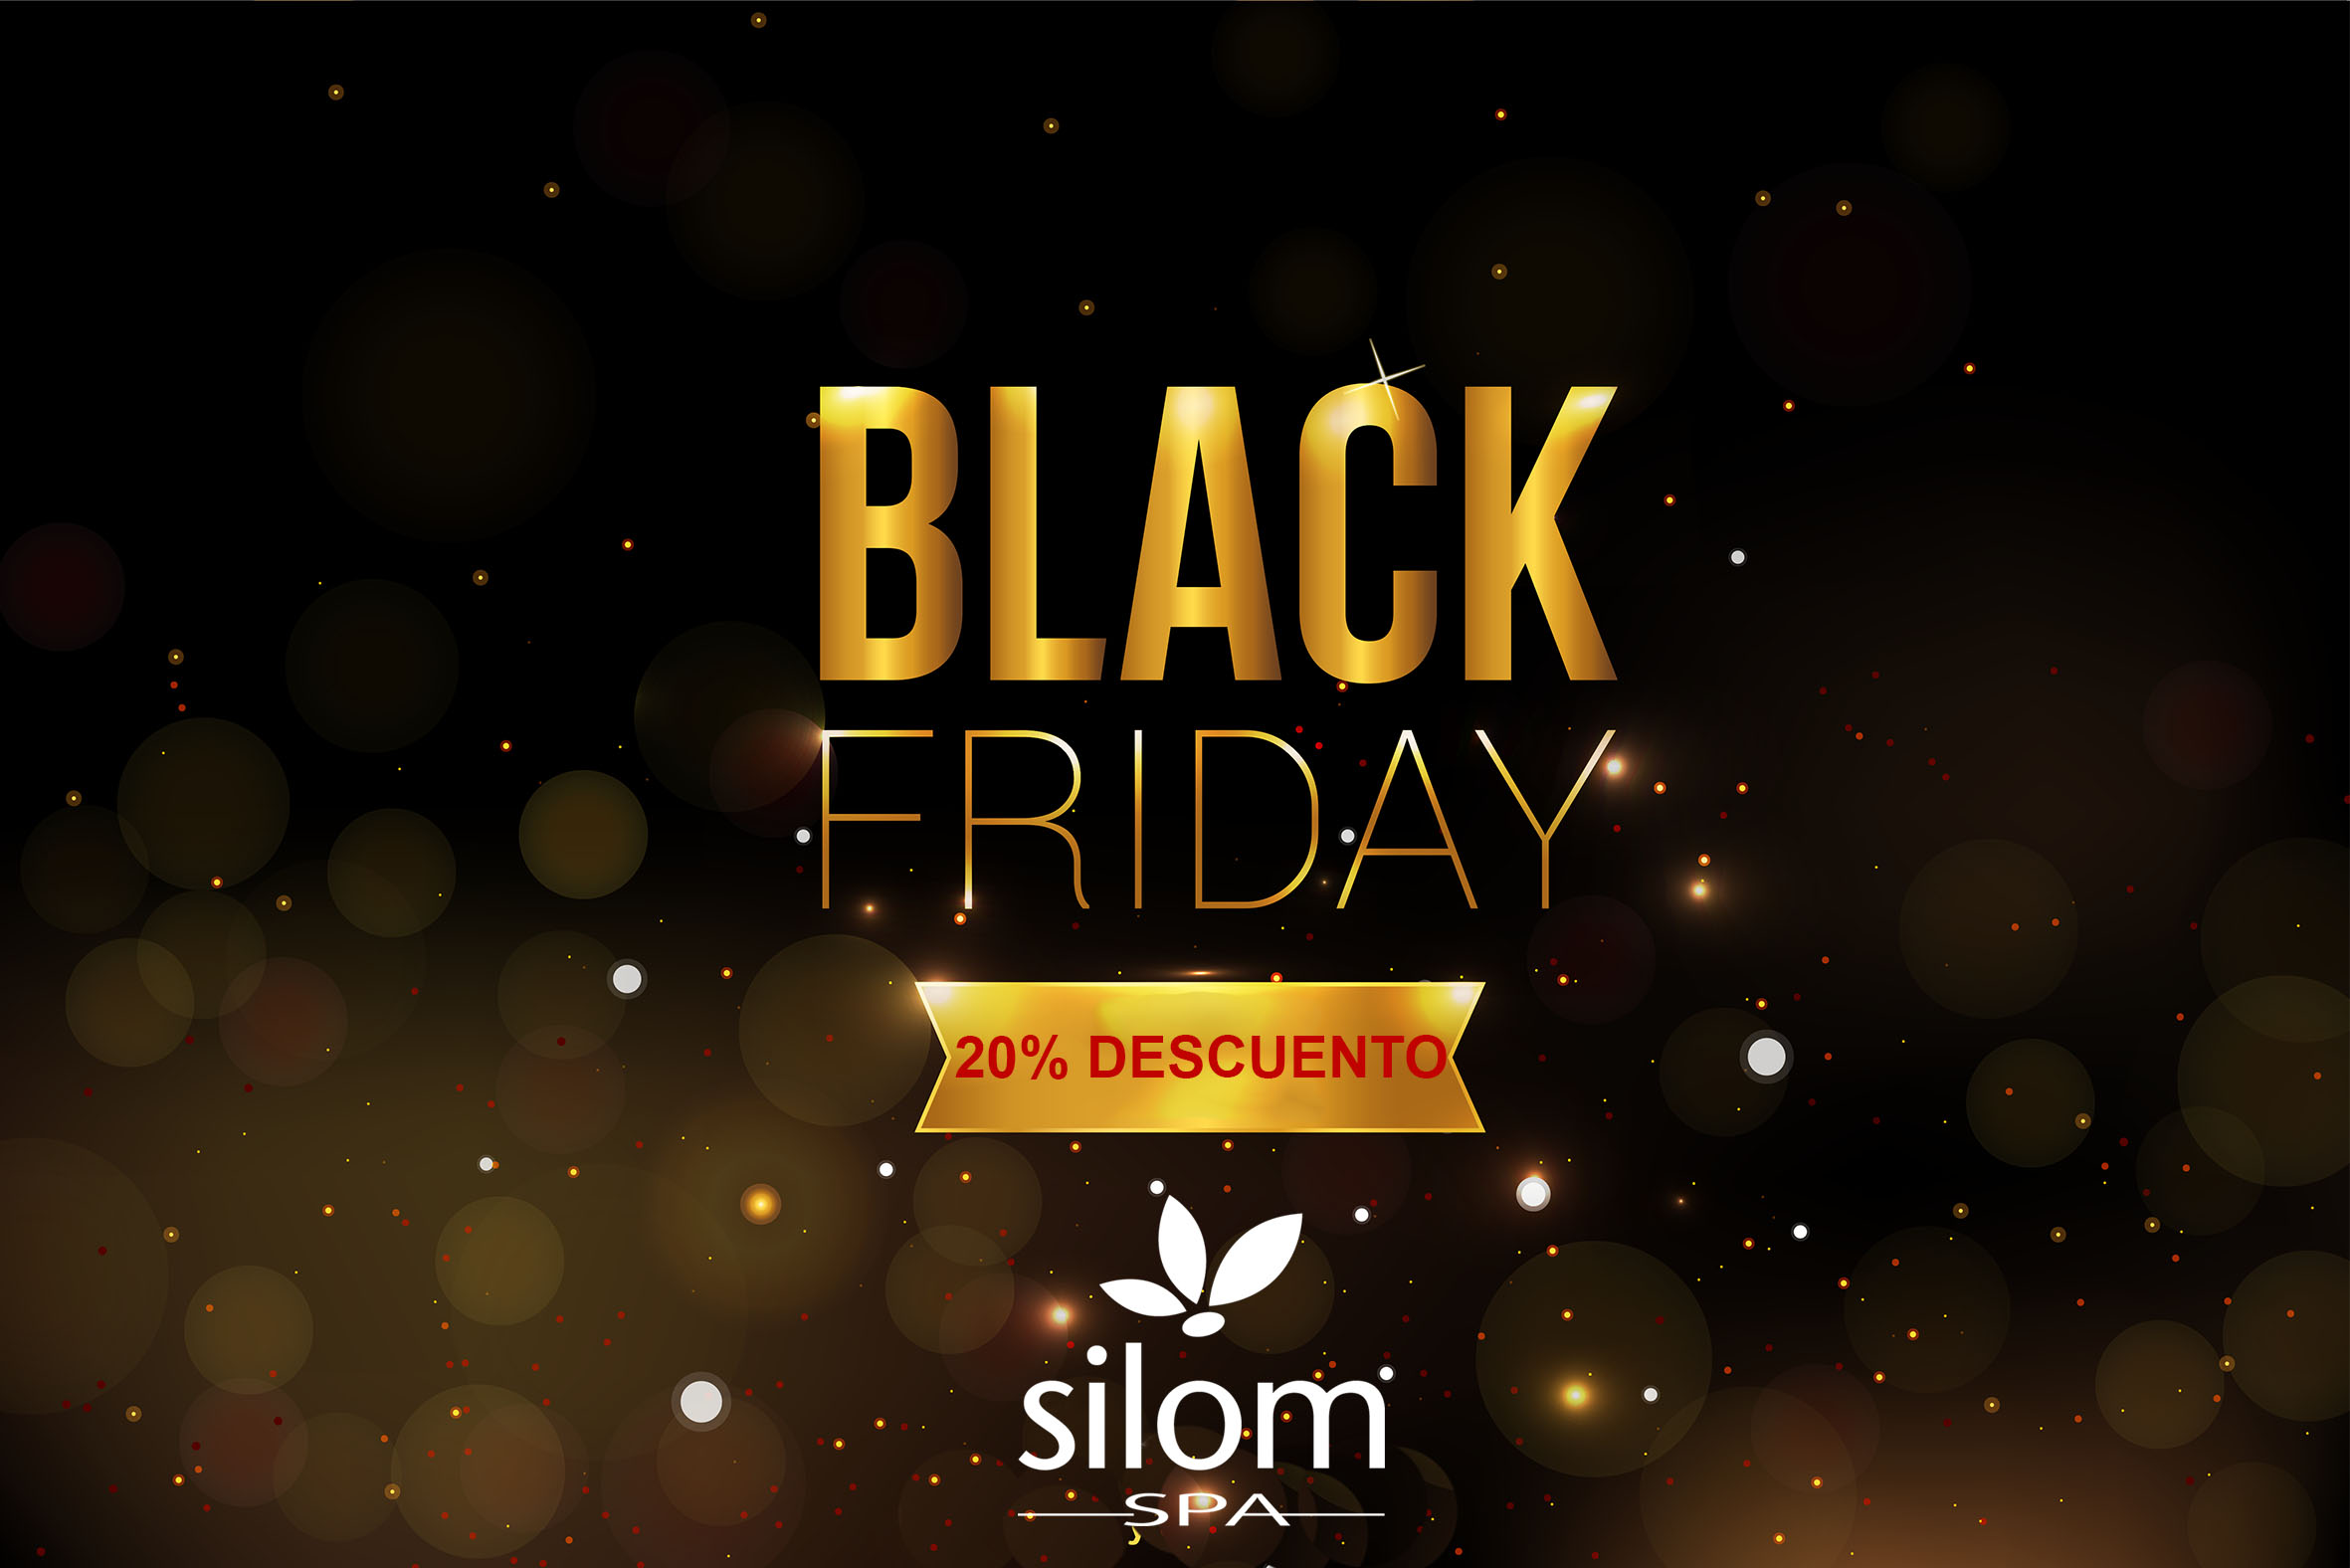 Black Friday in Silom Spa